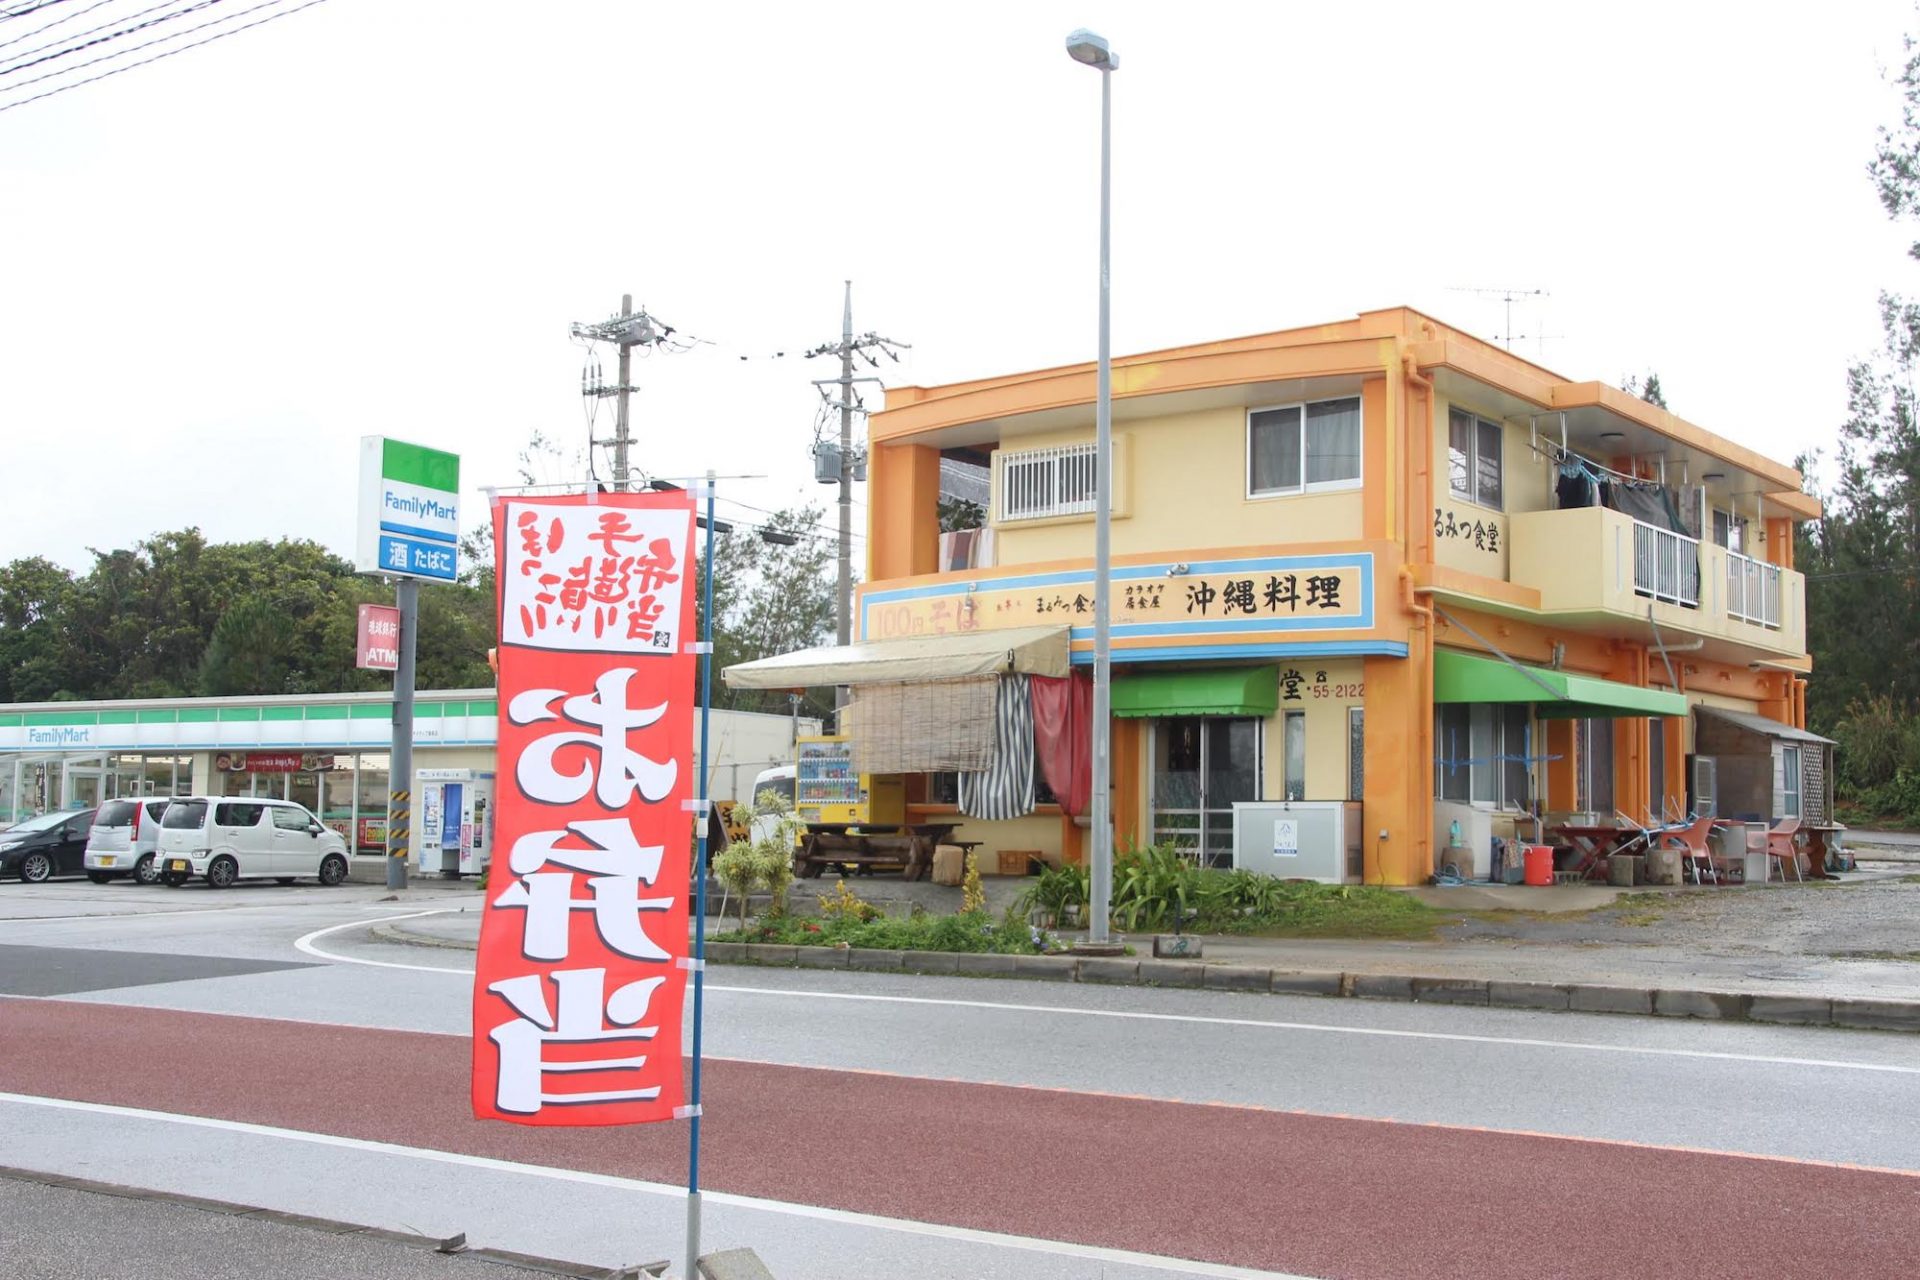 ここはお弁当屋の楽園か 名護市辺野古の329号線沿い 2軒のお弁当屋 まるみつ食堂 と 居食屋 海味 の人気っぷりを偵察 沖縄の観光情報はfeel Okinawa